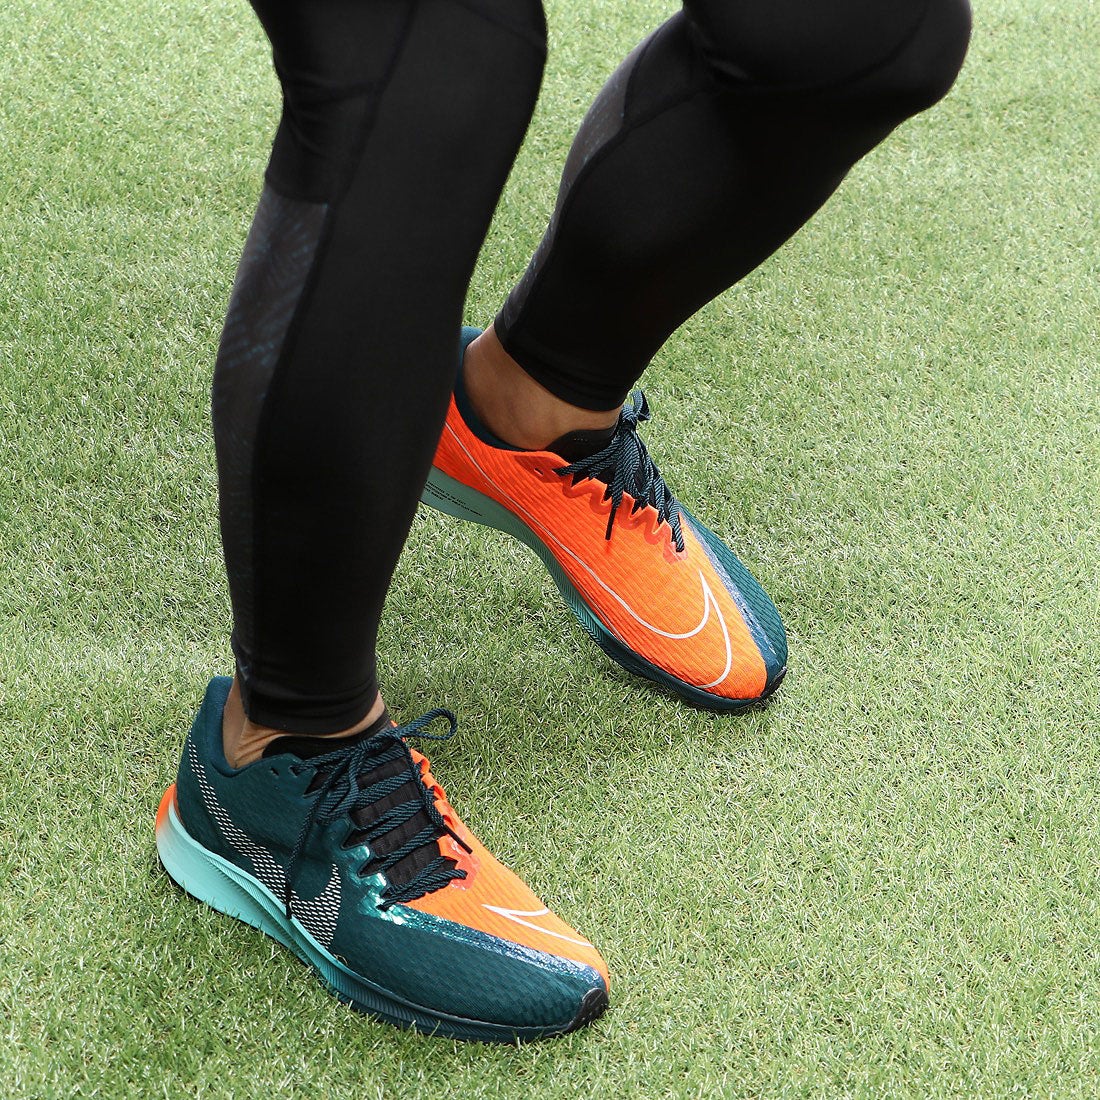 ナイキ Nike 陸上 ランニング ランニングシューズ ナイキ ズーム ライバル フライ 2 Cd 靴 ファッション通販 ロコンド 自宅で試着 気軽に返品